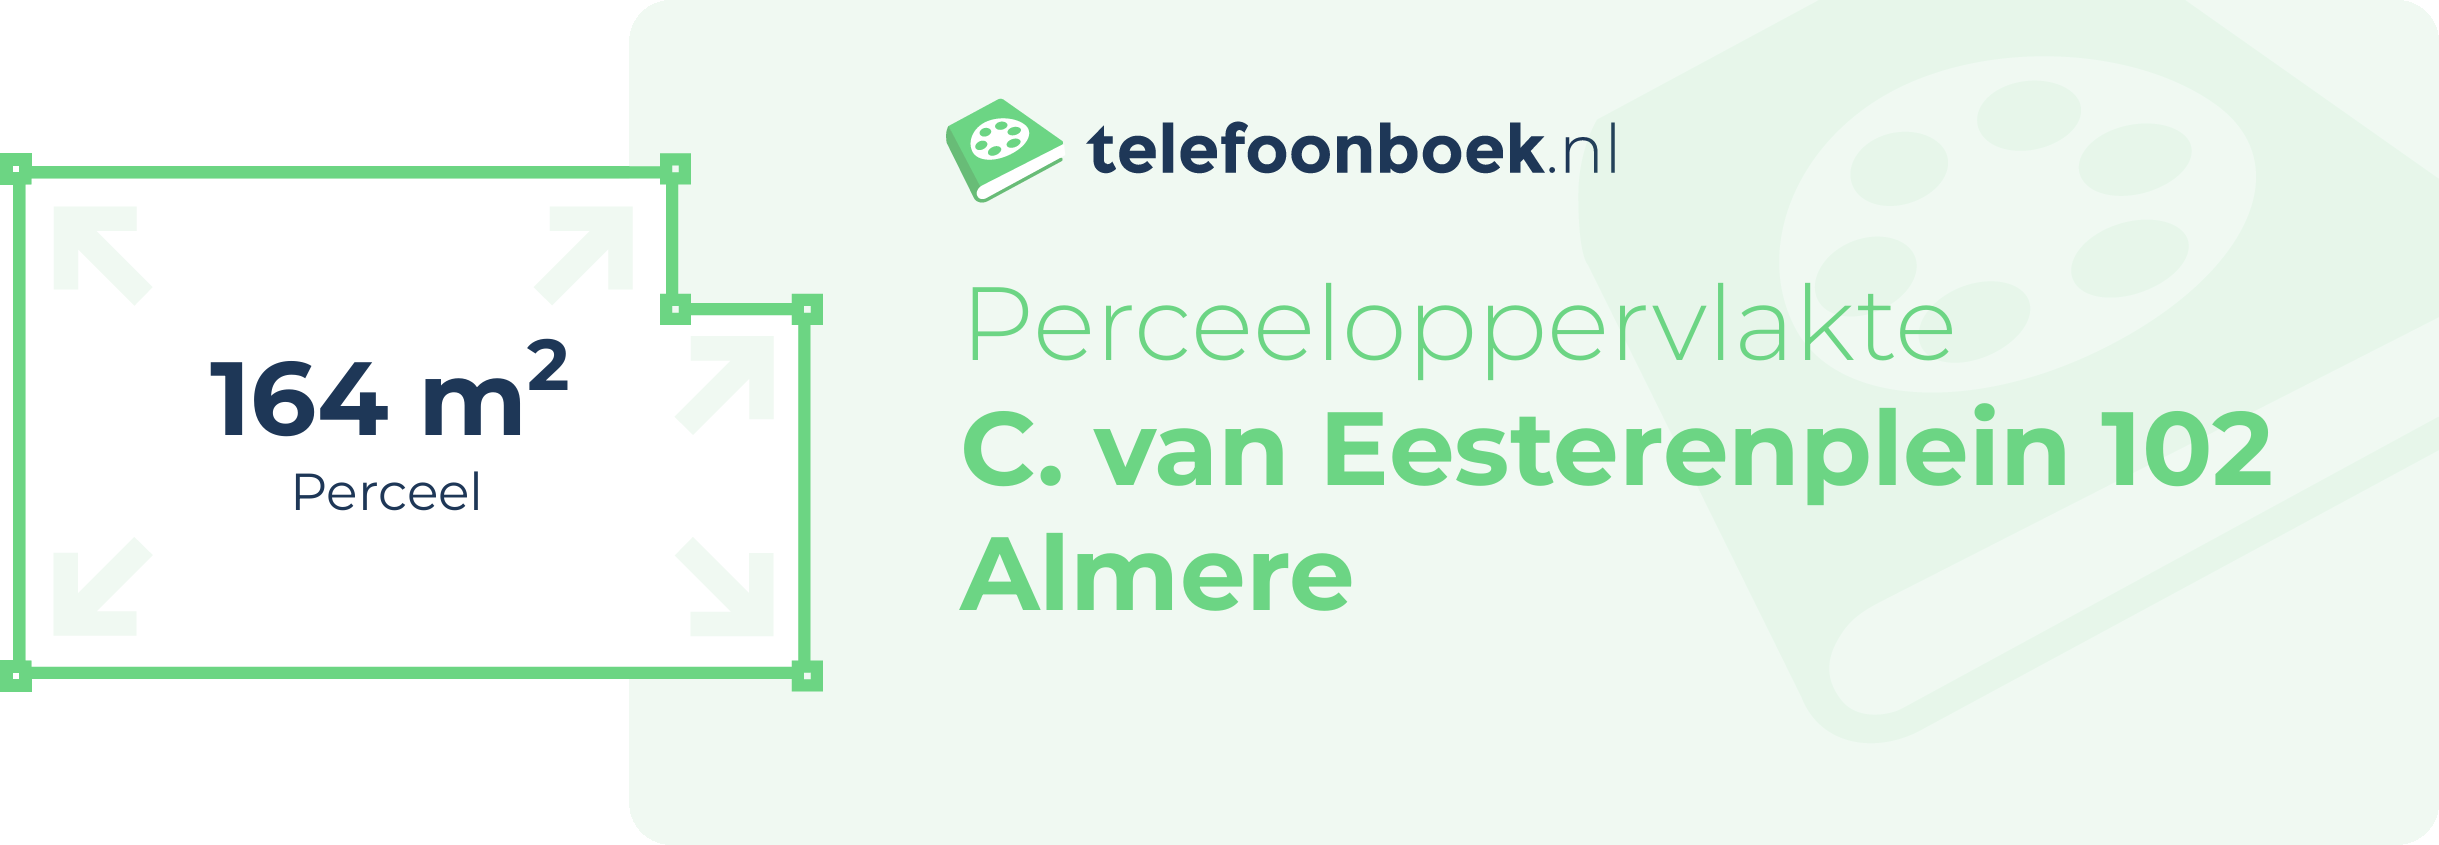 Perceeloppervlakte C. Van Eesterenplein 102 Almere